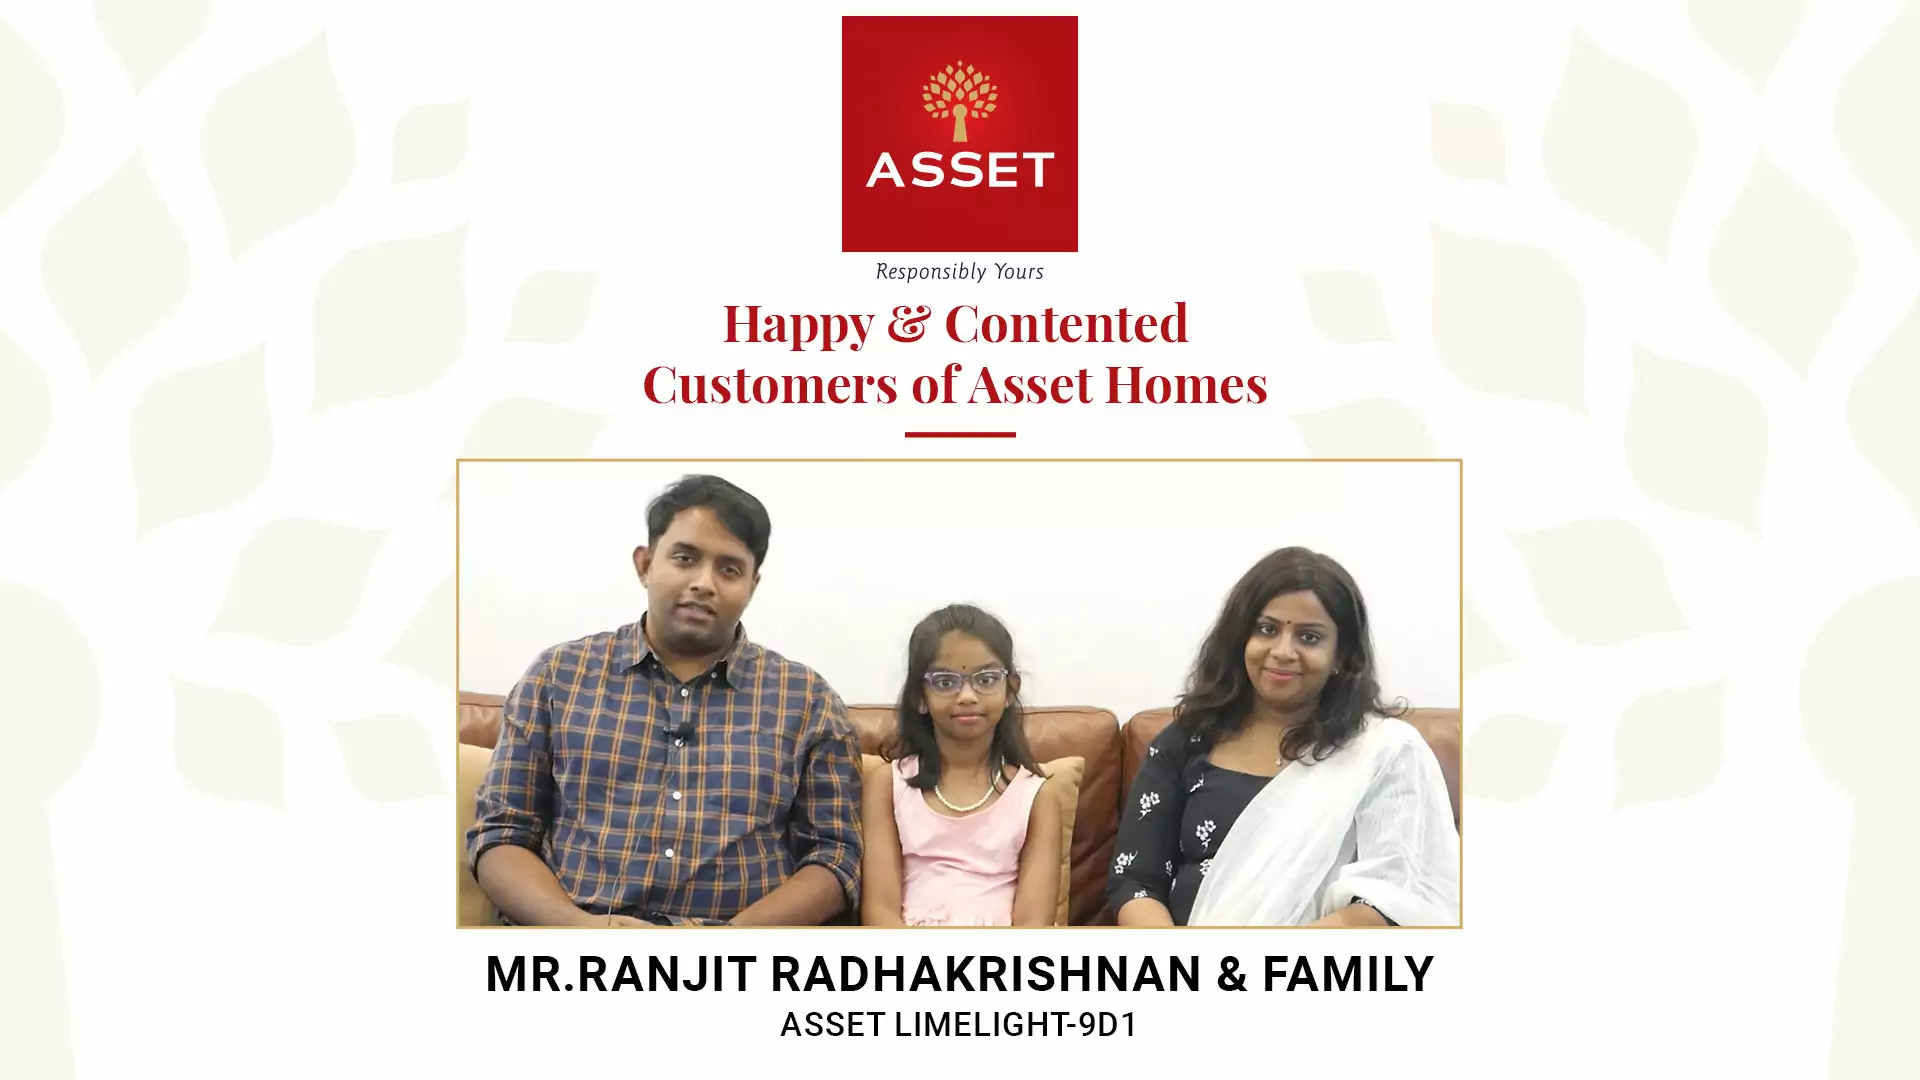 Mr. Ranjit Radhakrishnan & Family: Asset Limelight